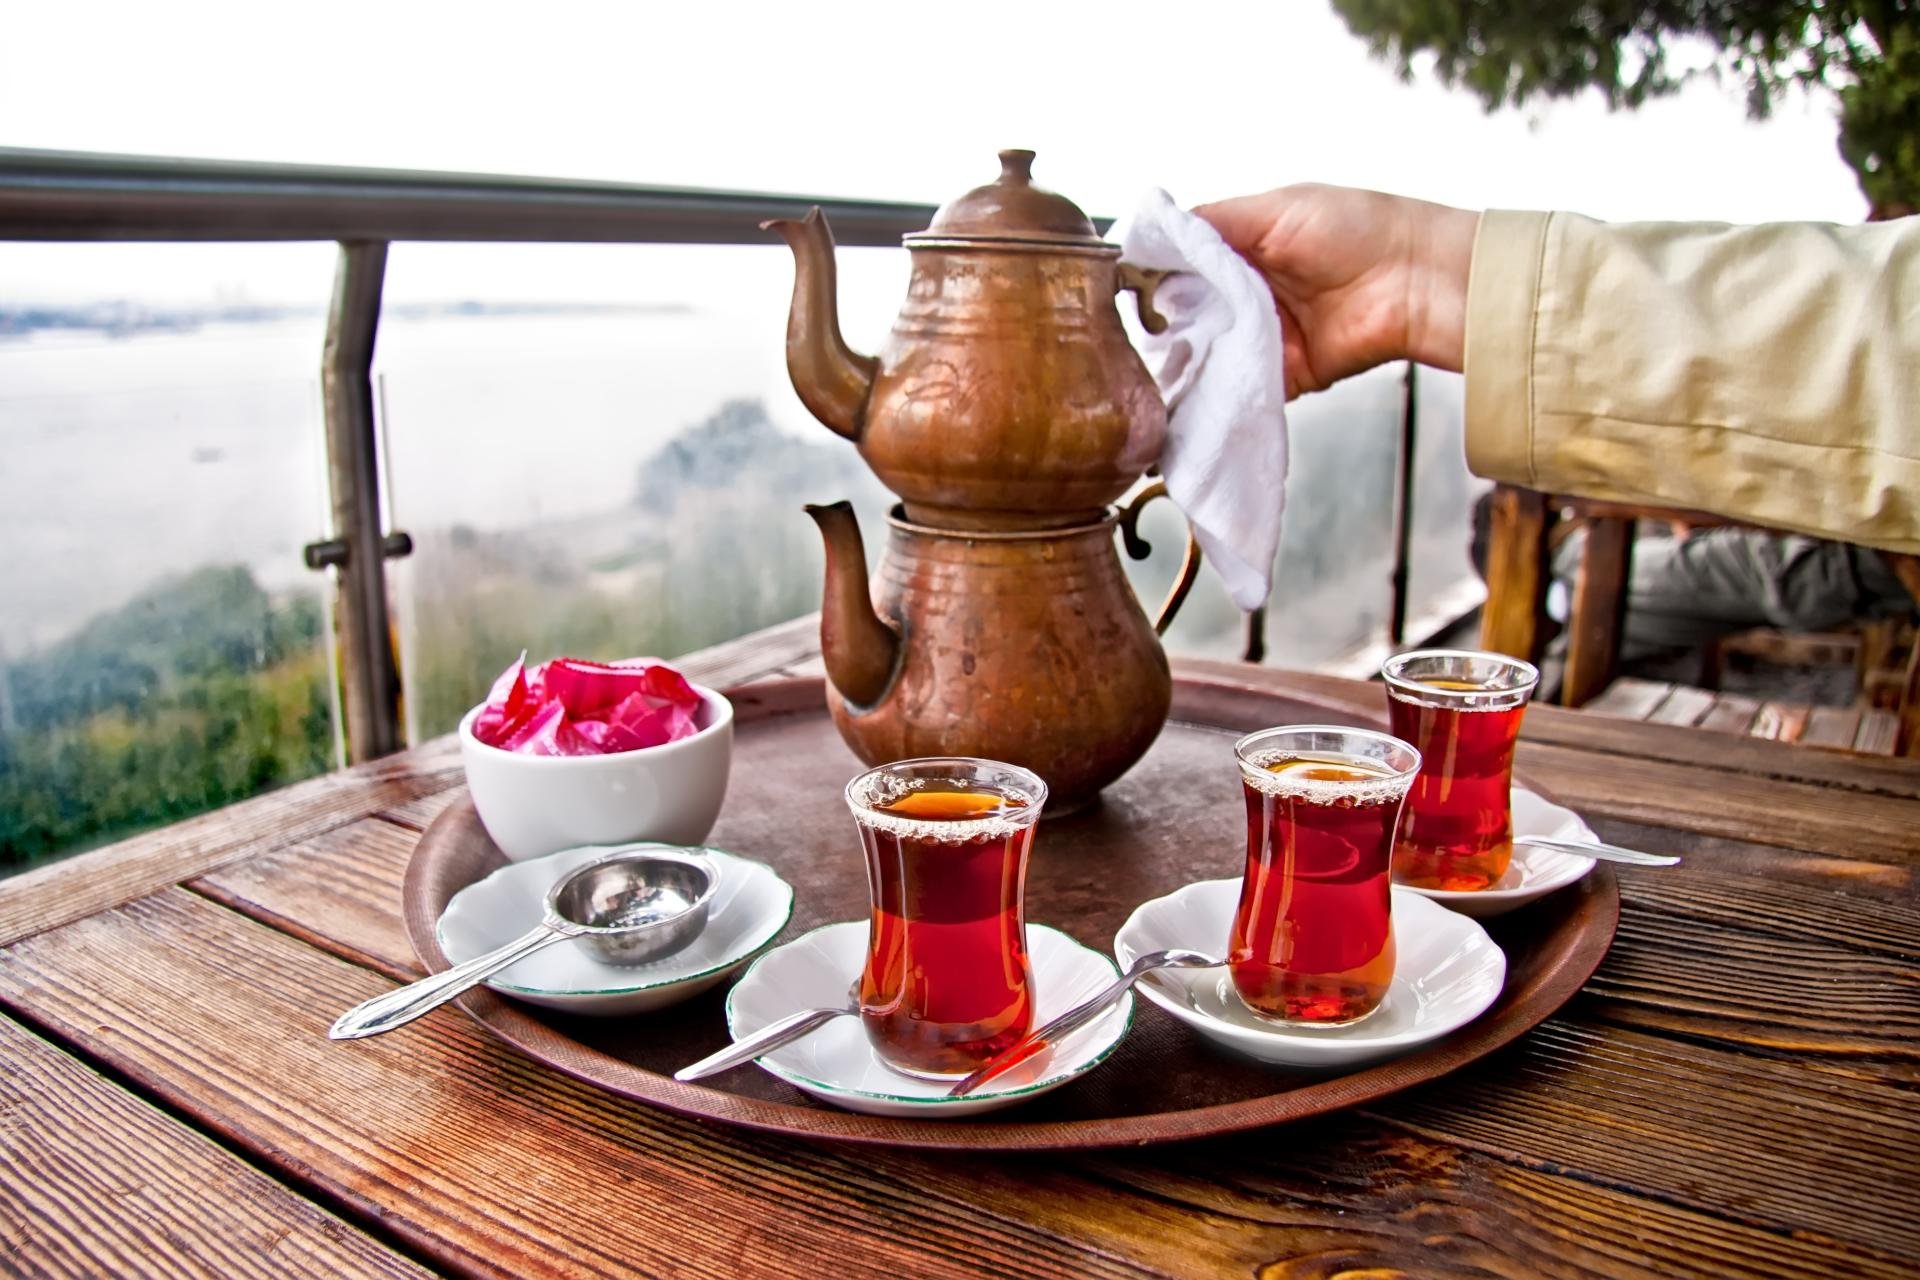 “Çay dəmləməyi azərbaycanlılardan öyrənmişəm”